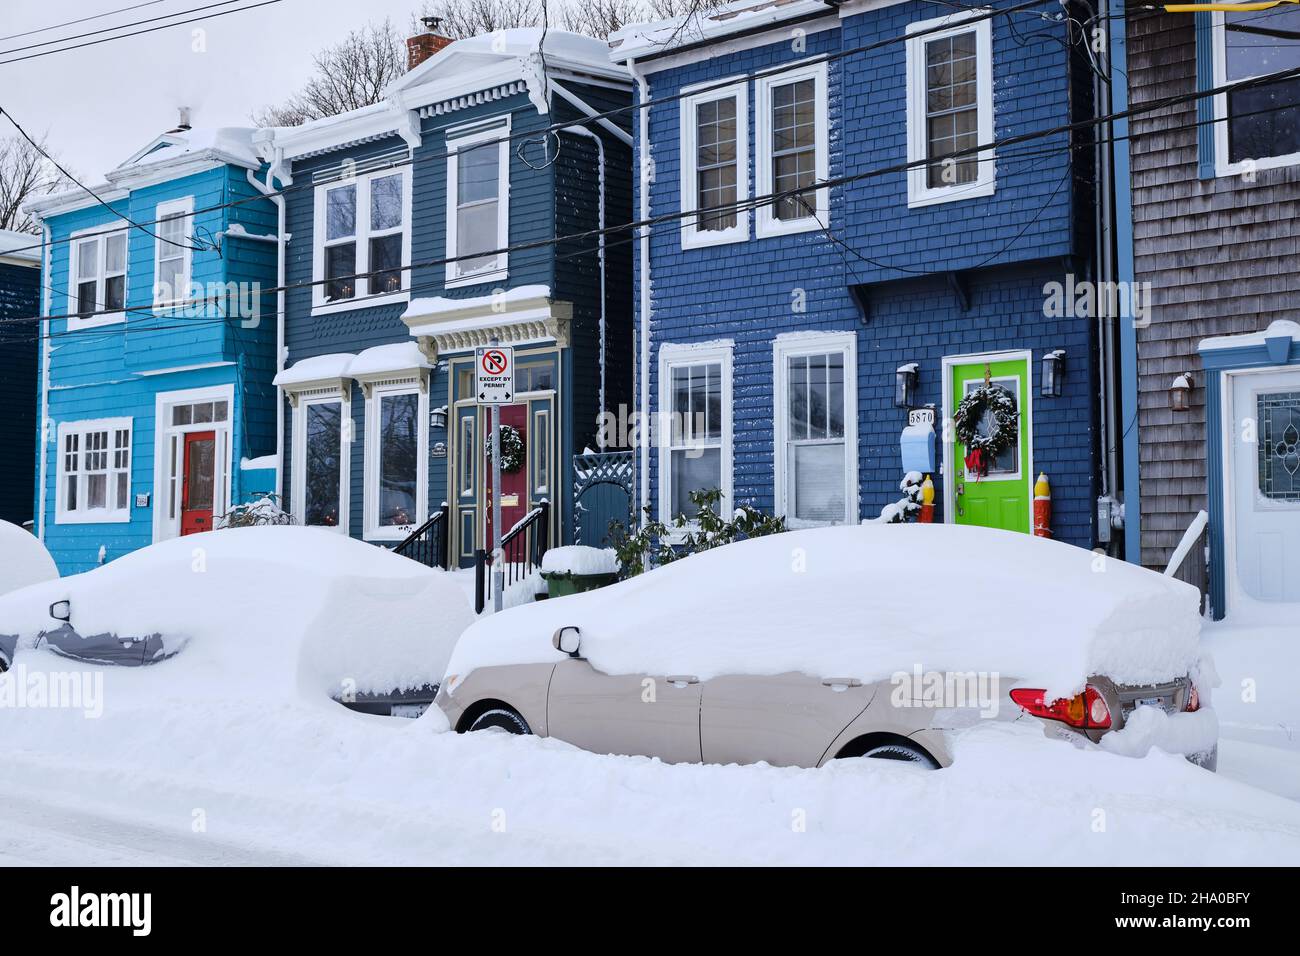 Halifax, Kanada, bedeckt mit Schnee nach dem ersten Schneesturm der Saison. Typischer Halifax Commons-Bereich mit buntem Haus auf der Straße mit Autos, die im Schnee begraben sind Stockfoto